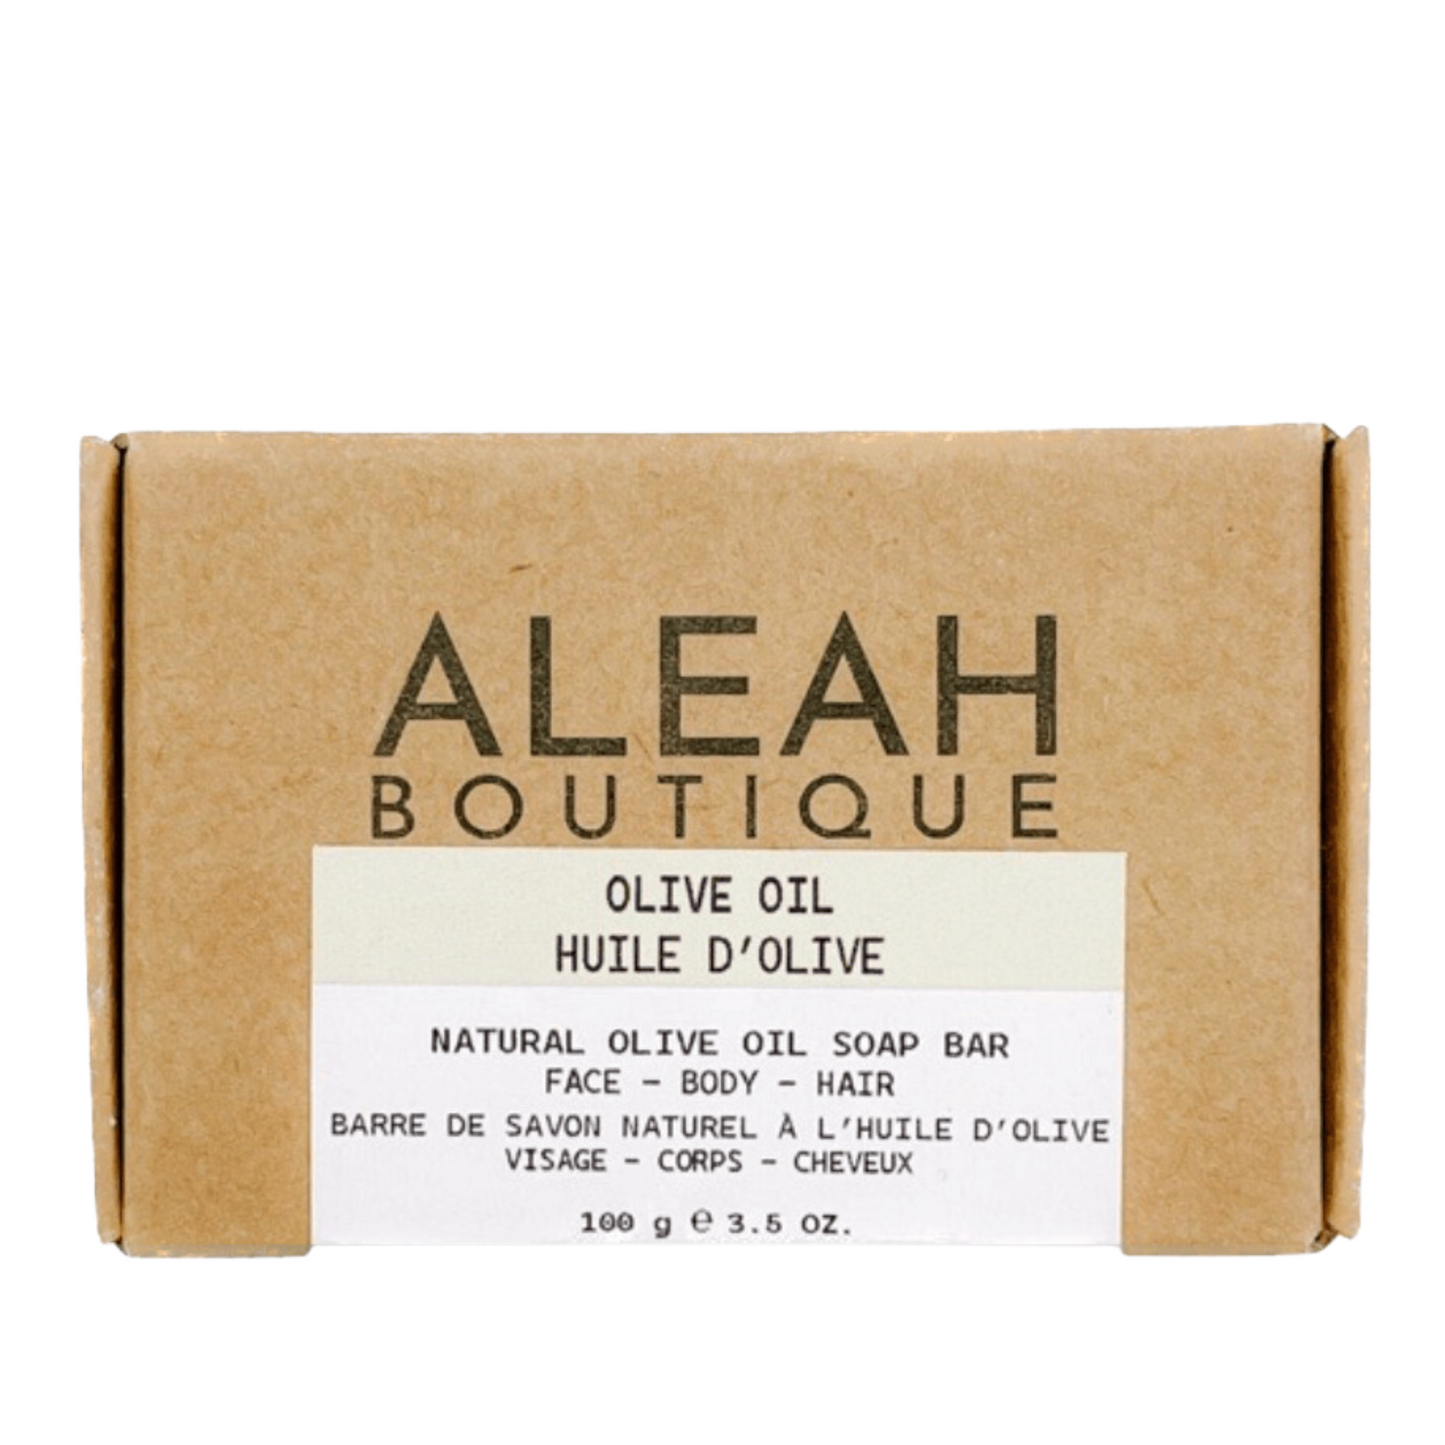 Olive Oil Soap Bar - Aleah's Boutique